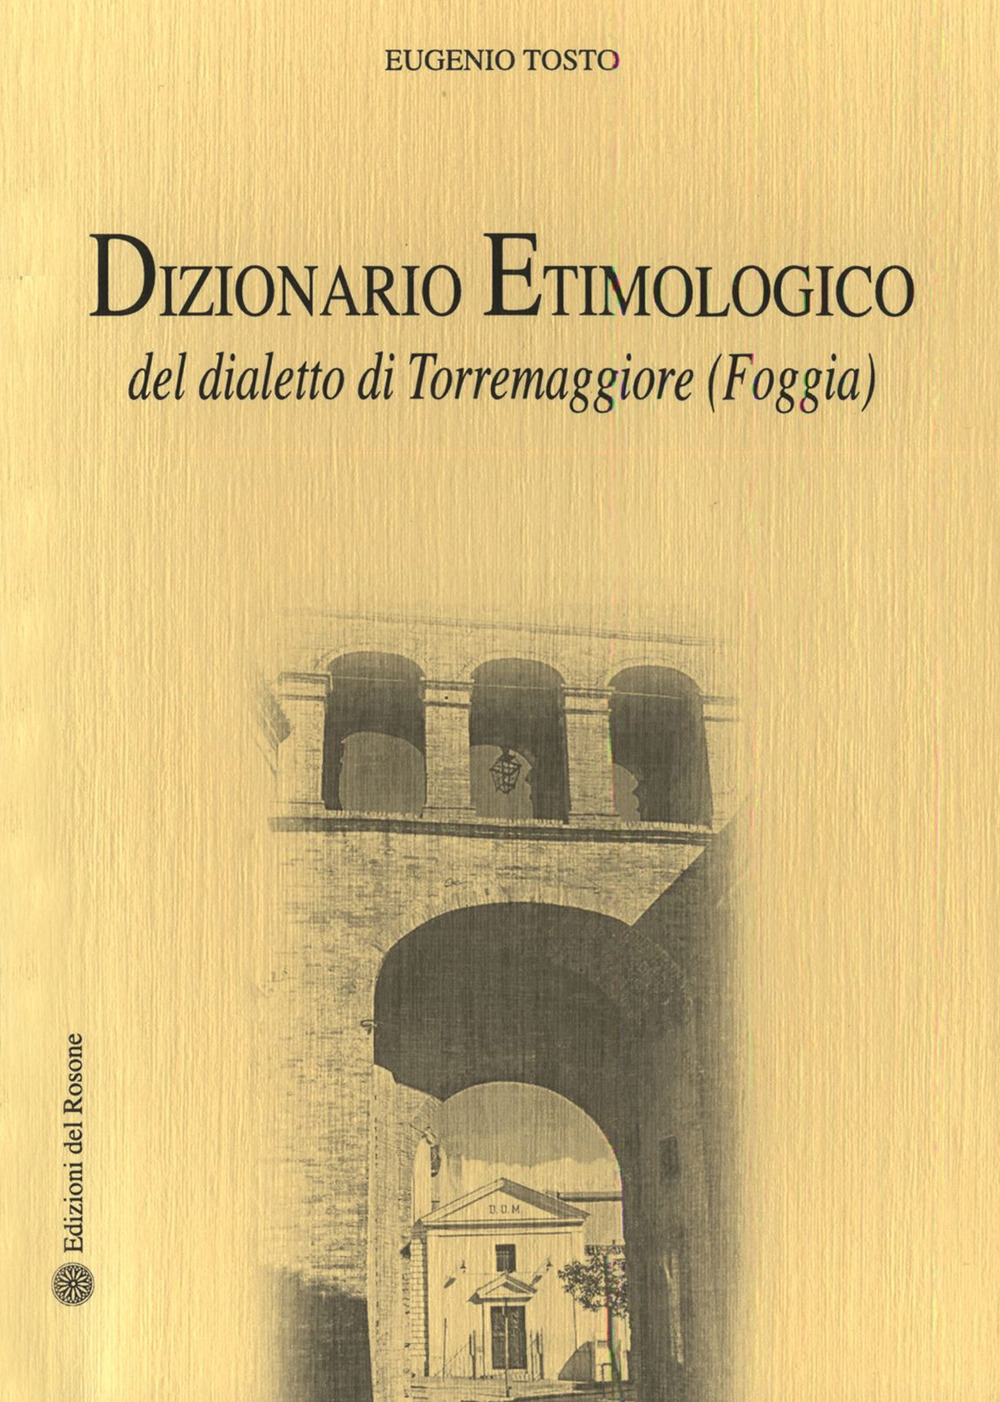 Dizionario etimologico del dialetto di Torremaggiore (Foggia) di